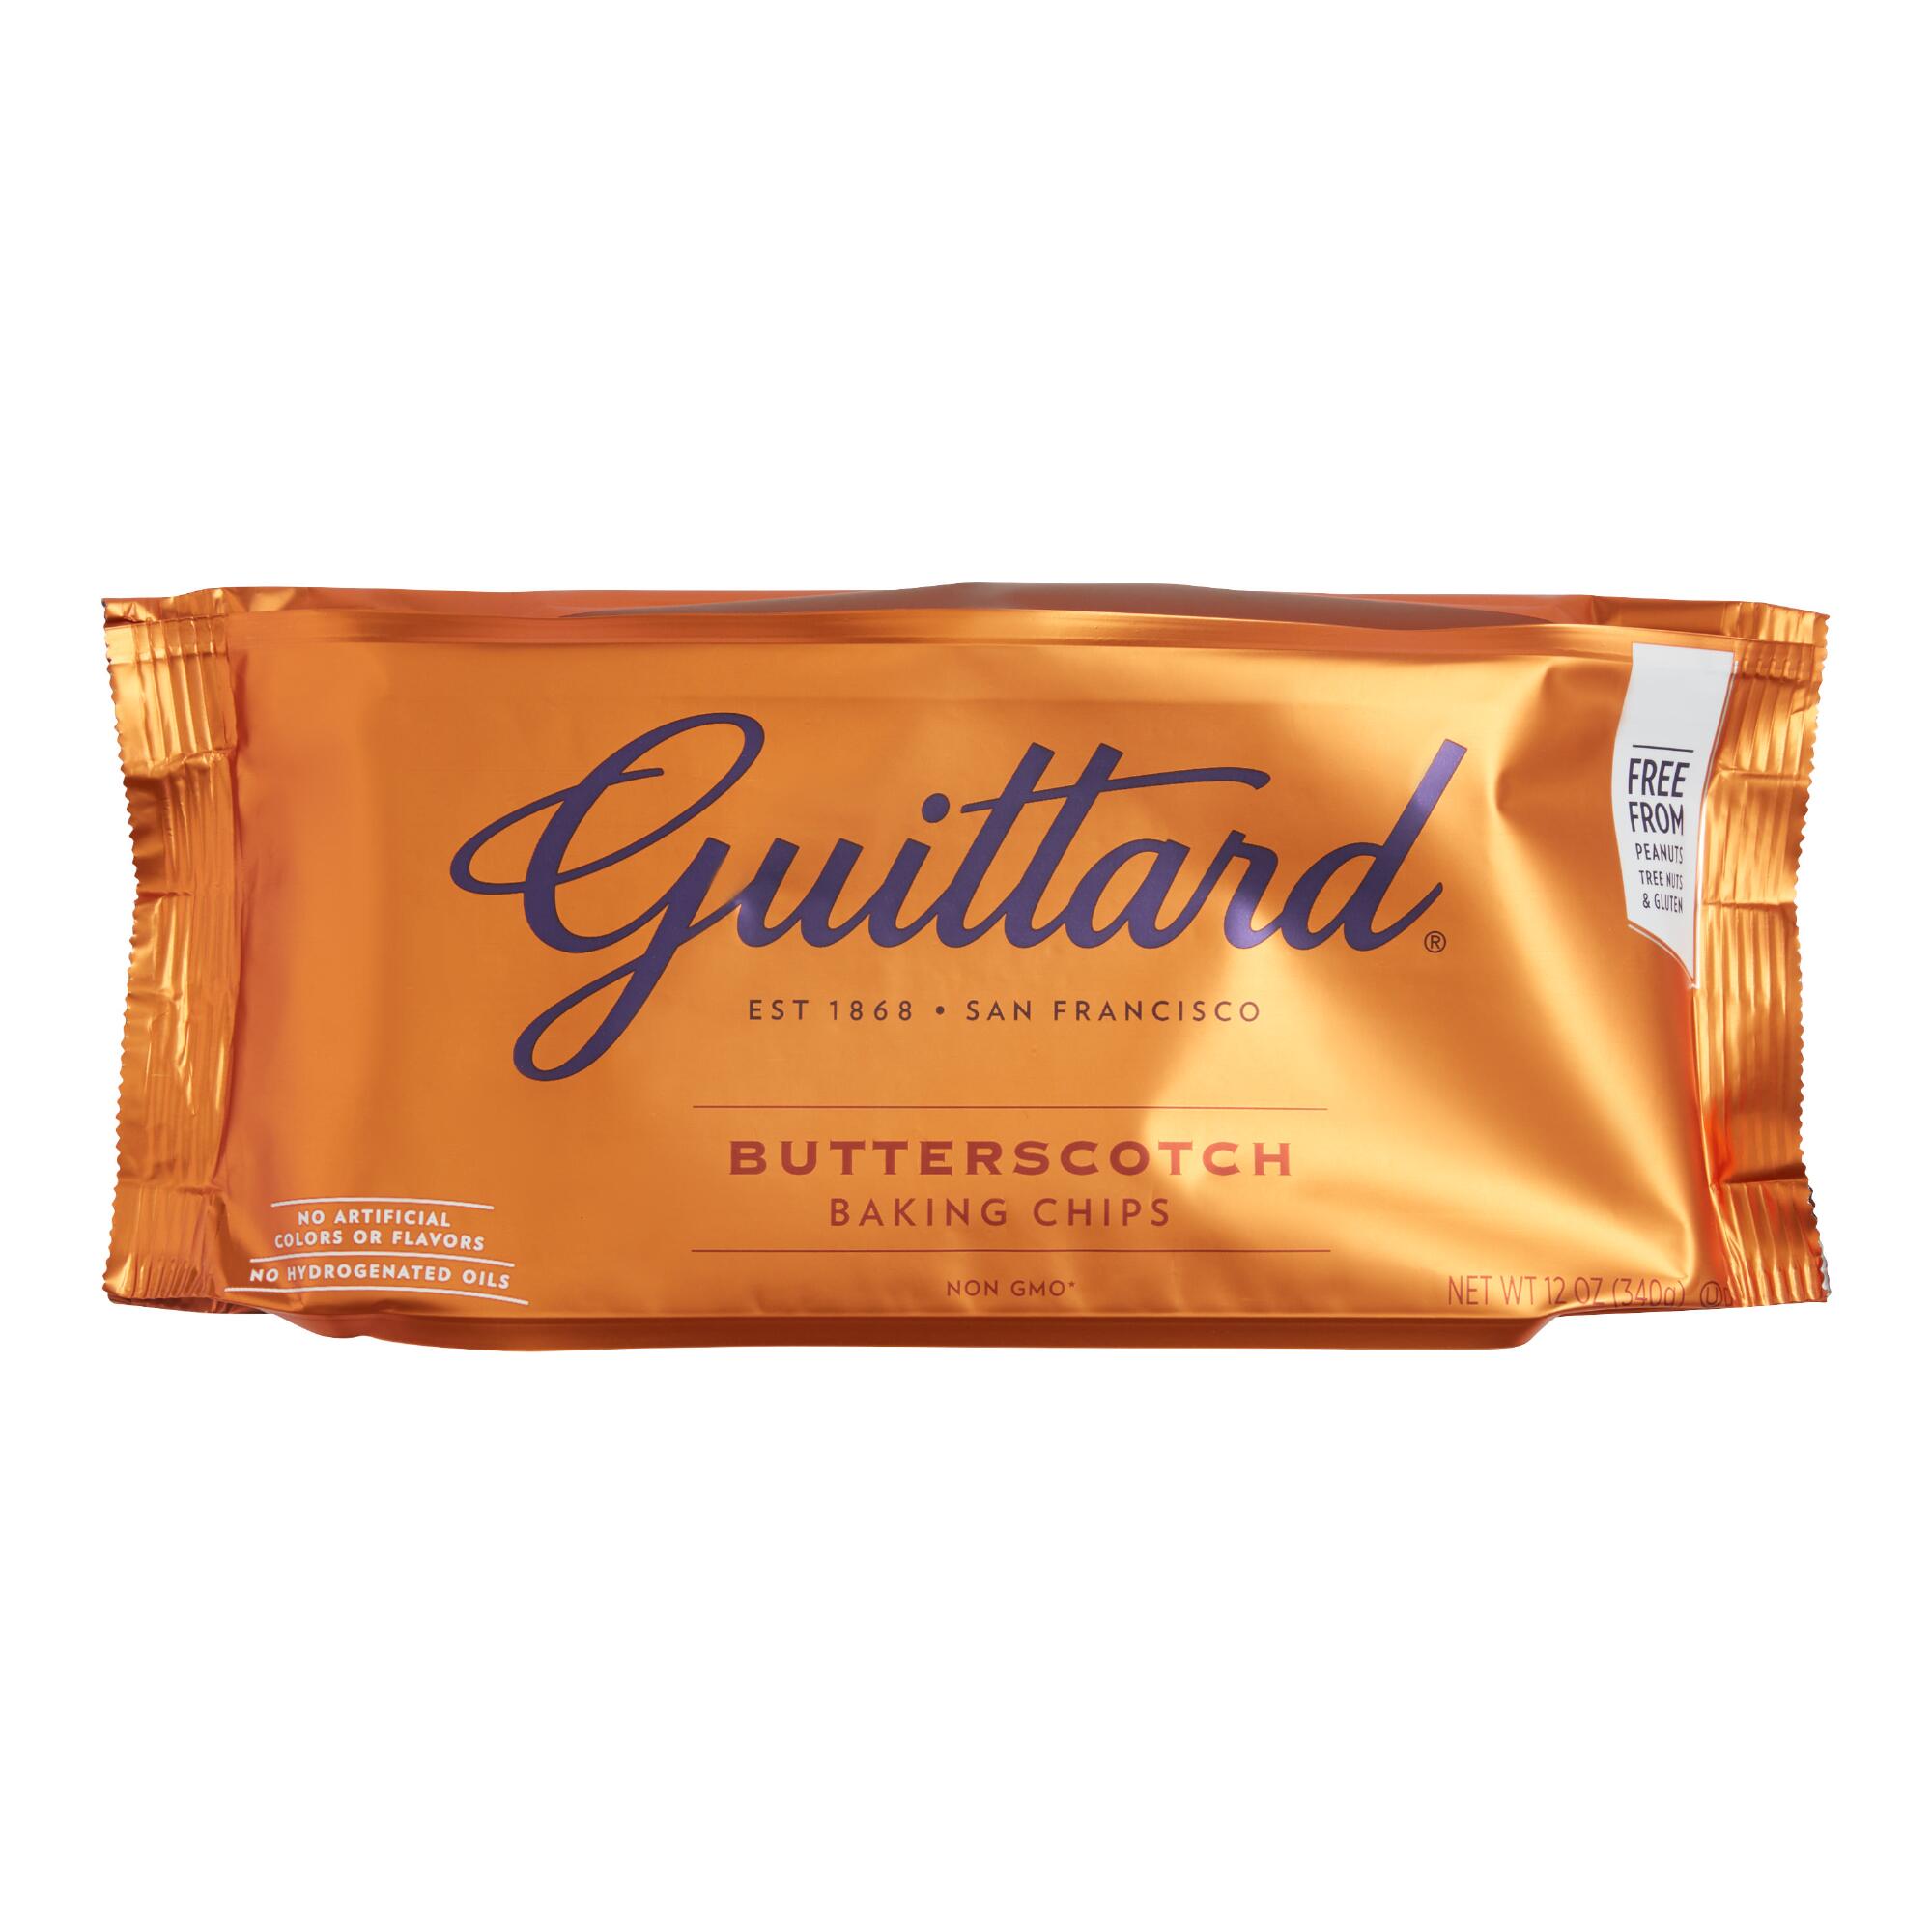 Guittard Butterscotch Baking Chips by World Market